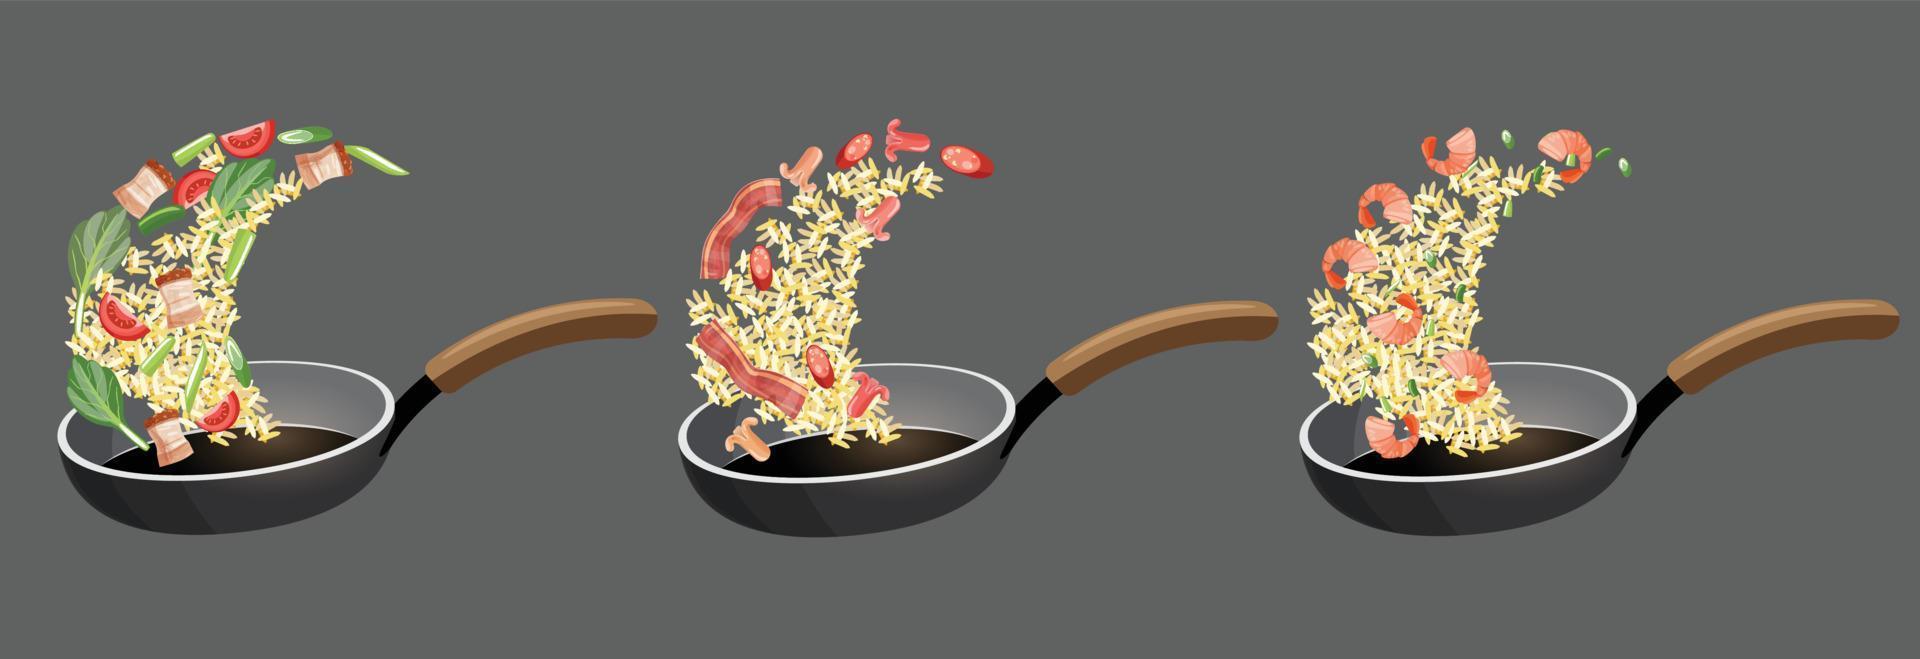 conjunto de cocina de arroz frito en una ilustración de vector de sartén